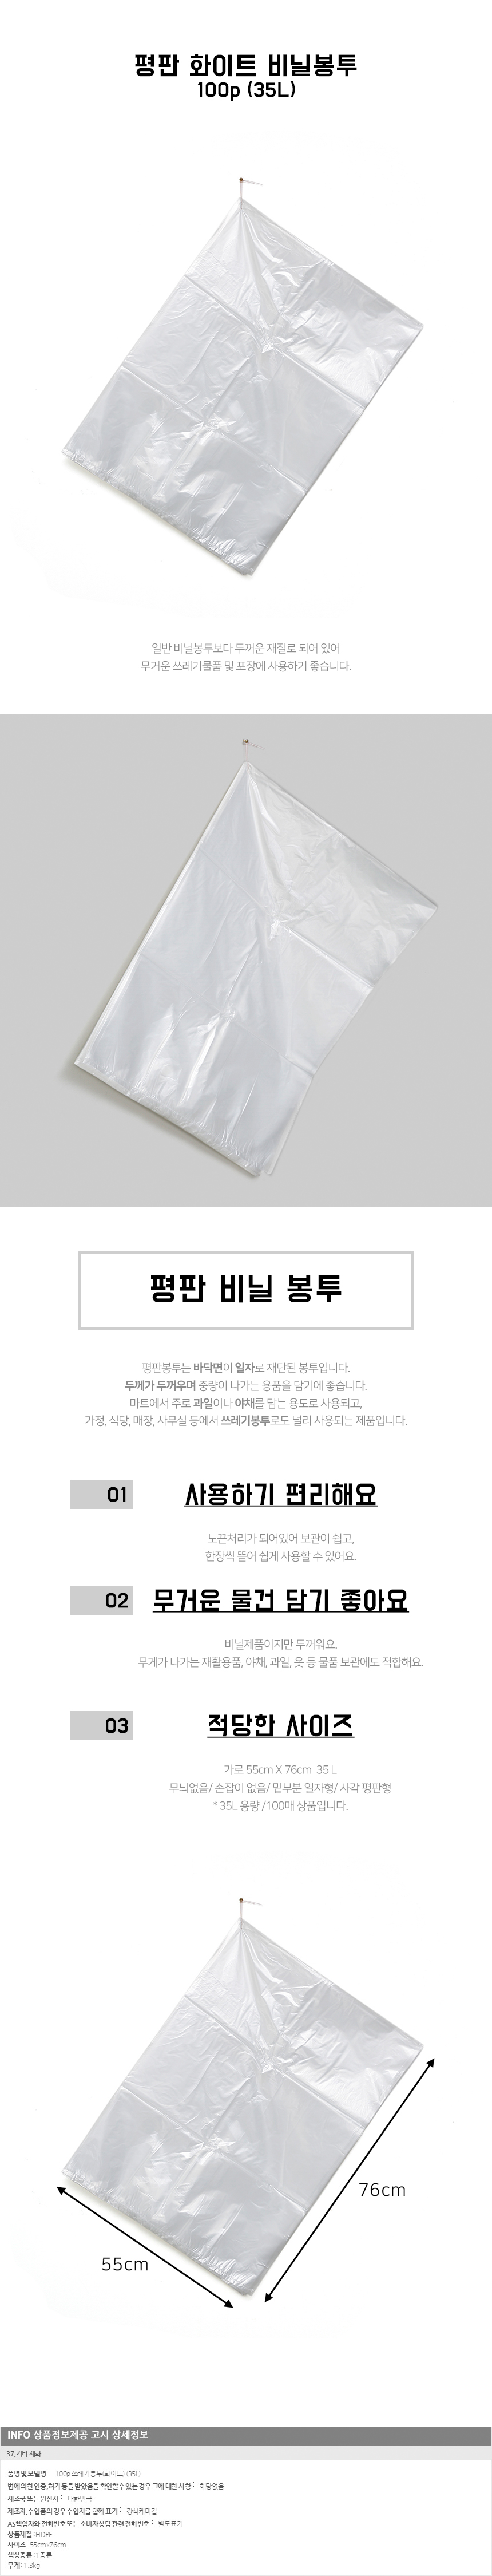 35L 쓰레기봉투 흰색 100매/ 재활용 분리수거비닐봉투